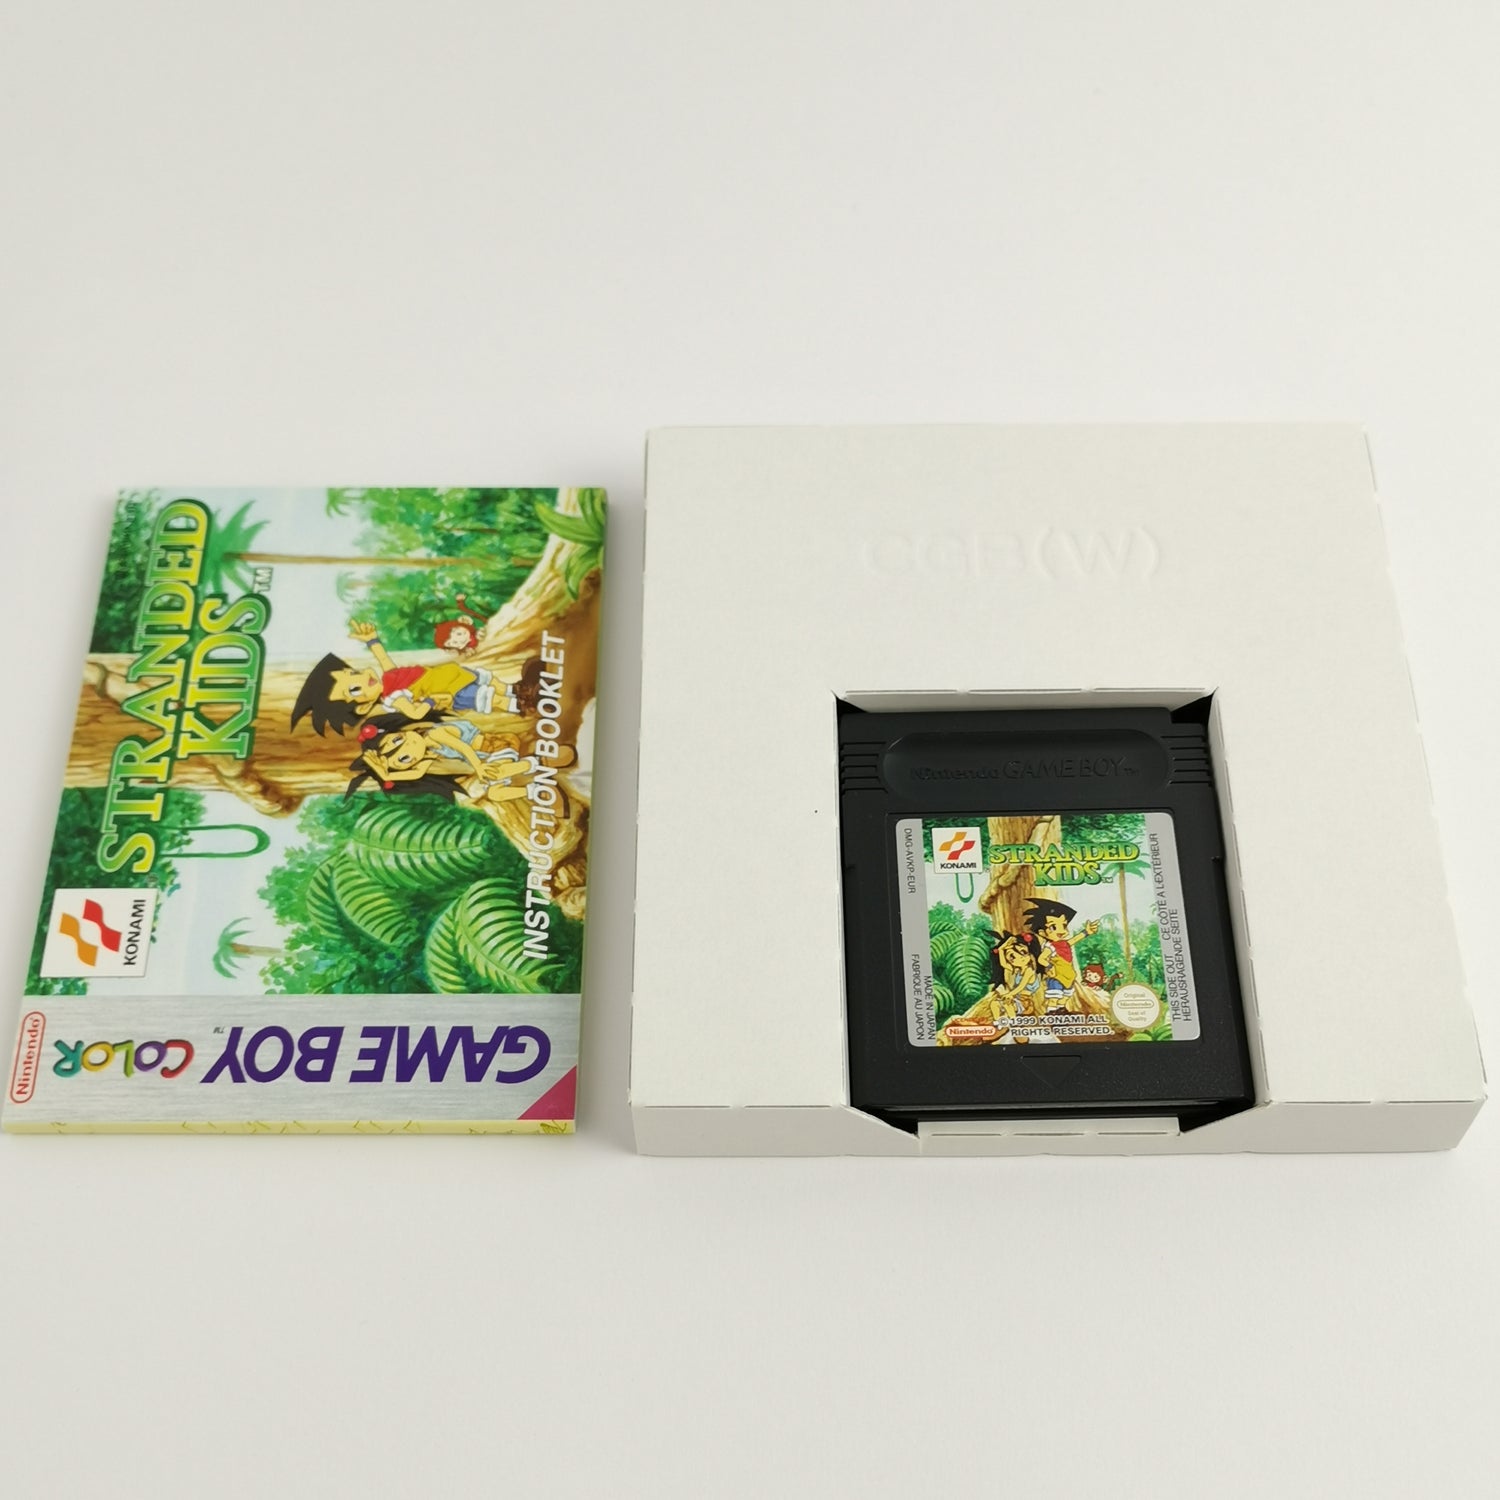 Nintendo Game Boy Color Game: Stranded Kids - Konami | Gameboy GBC - OVP PAL